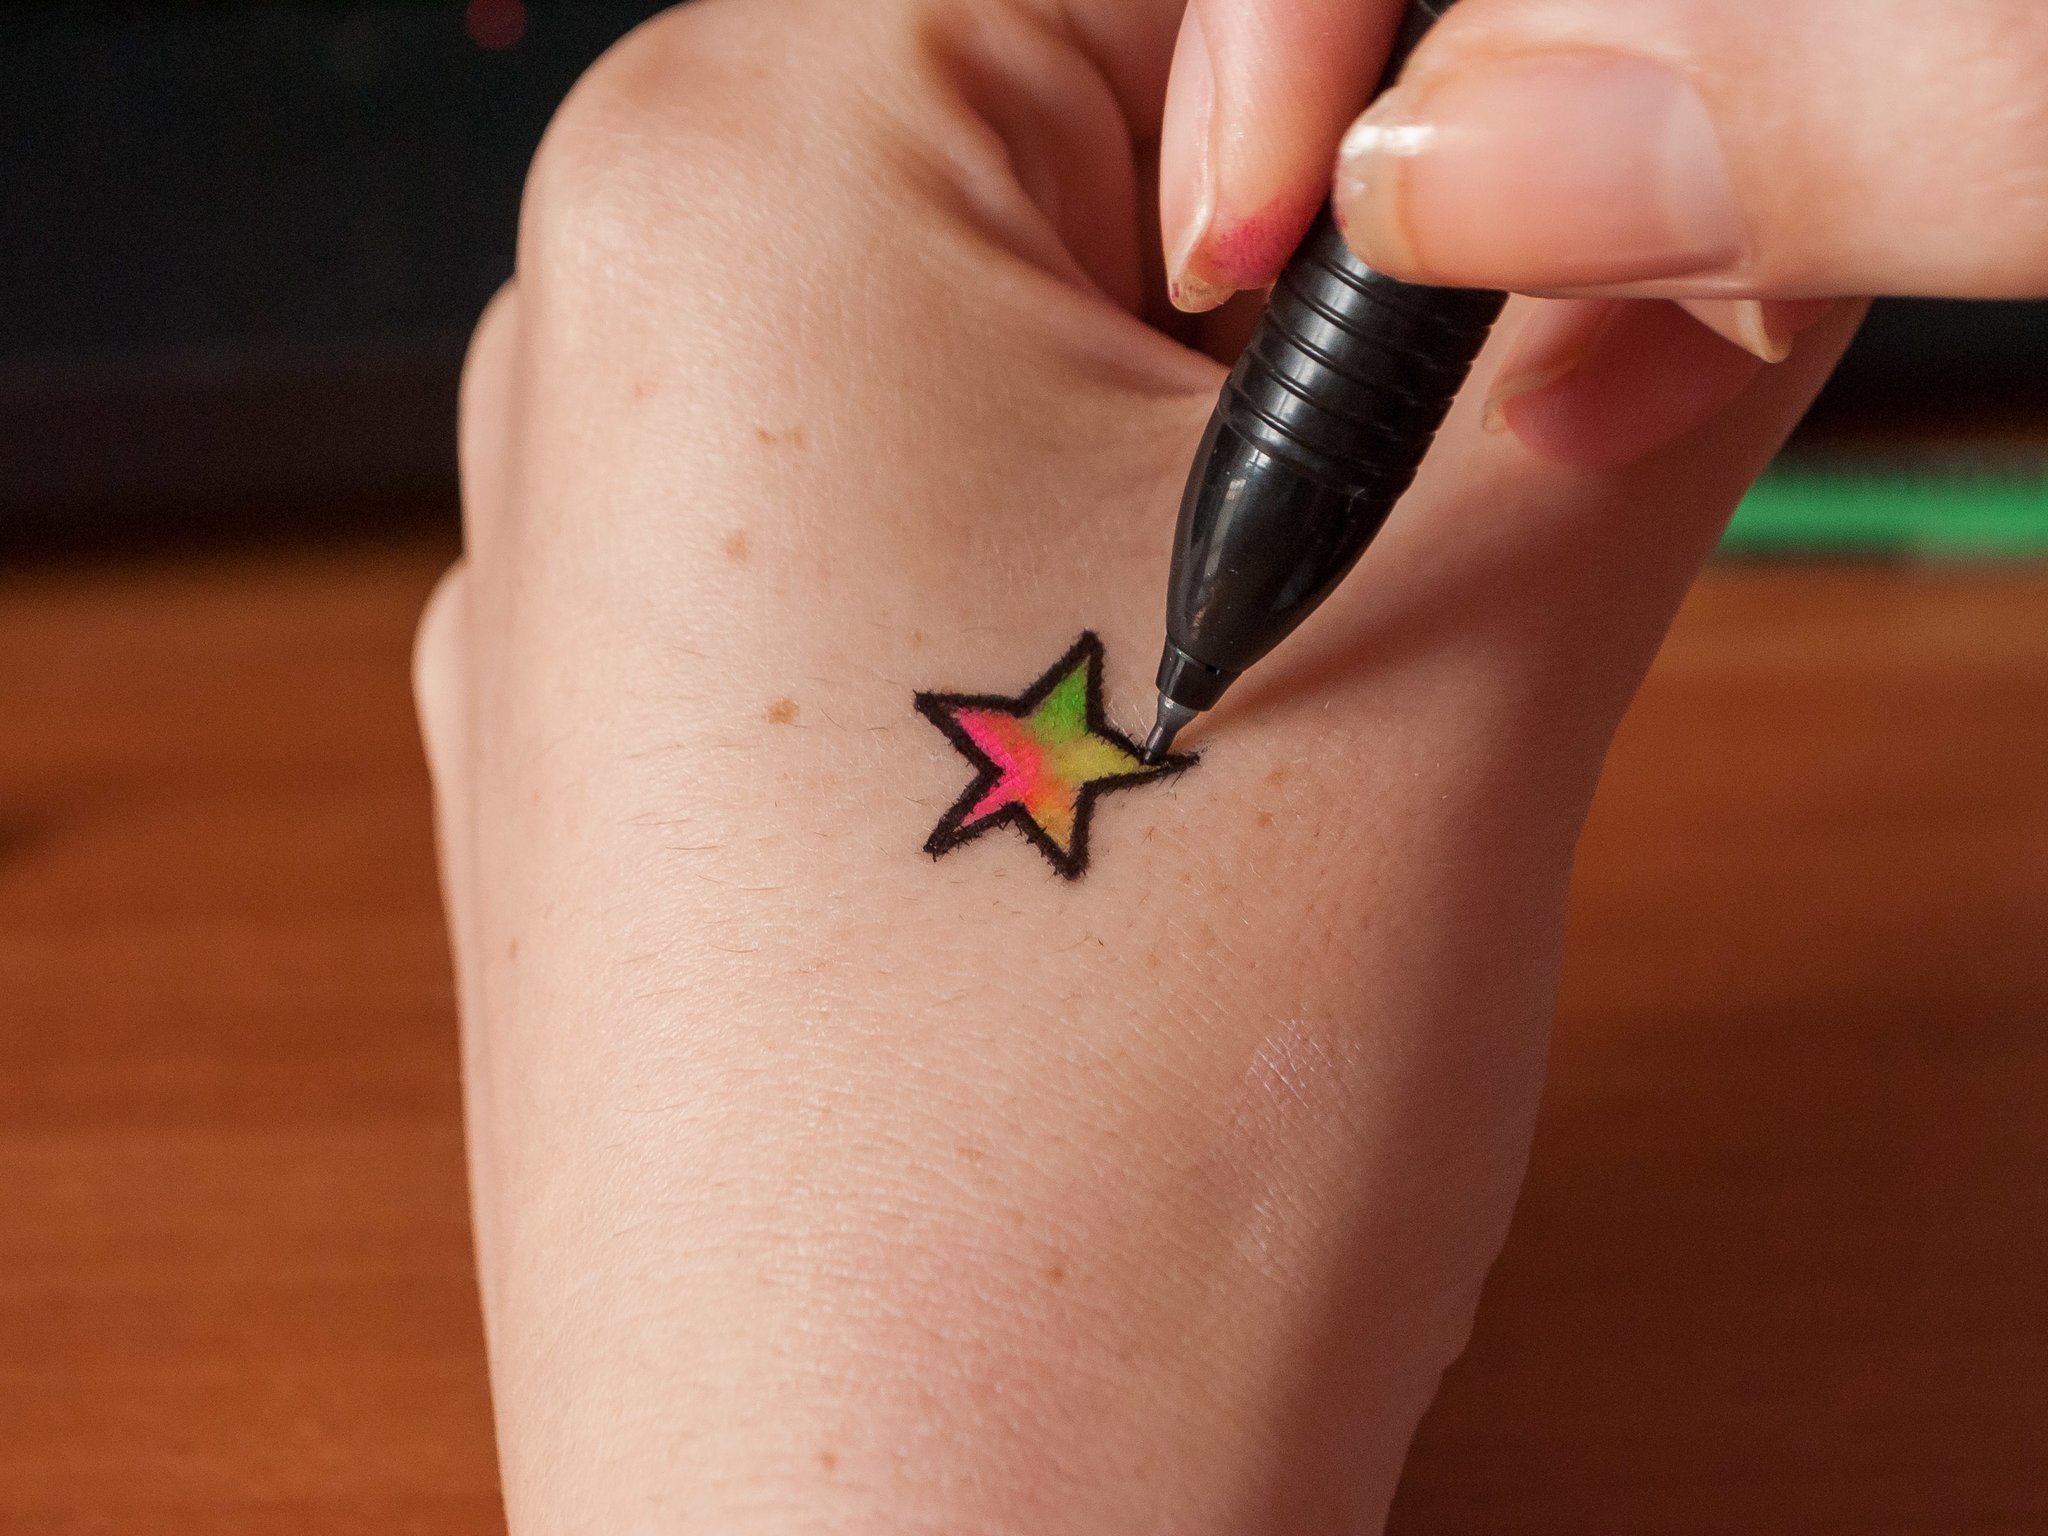 Как смывать временные переводные татуировки?